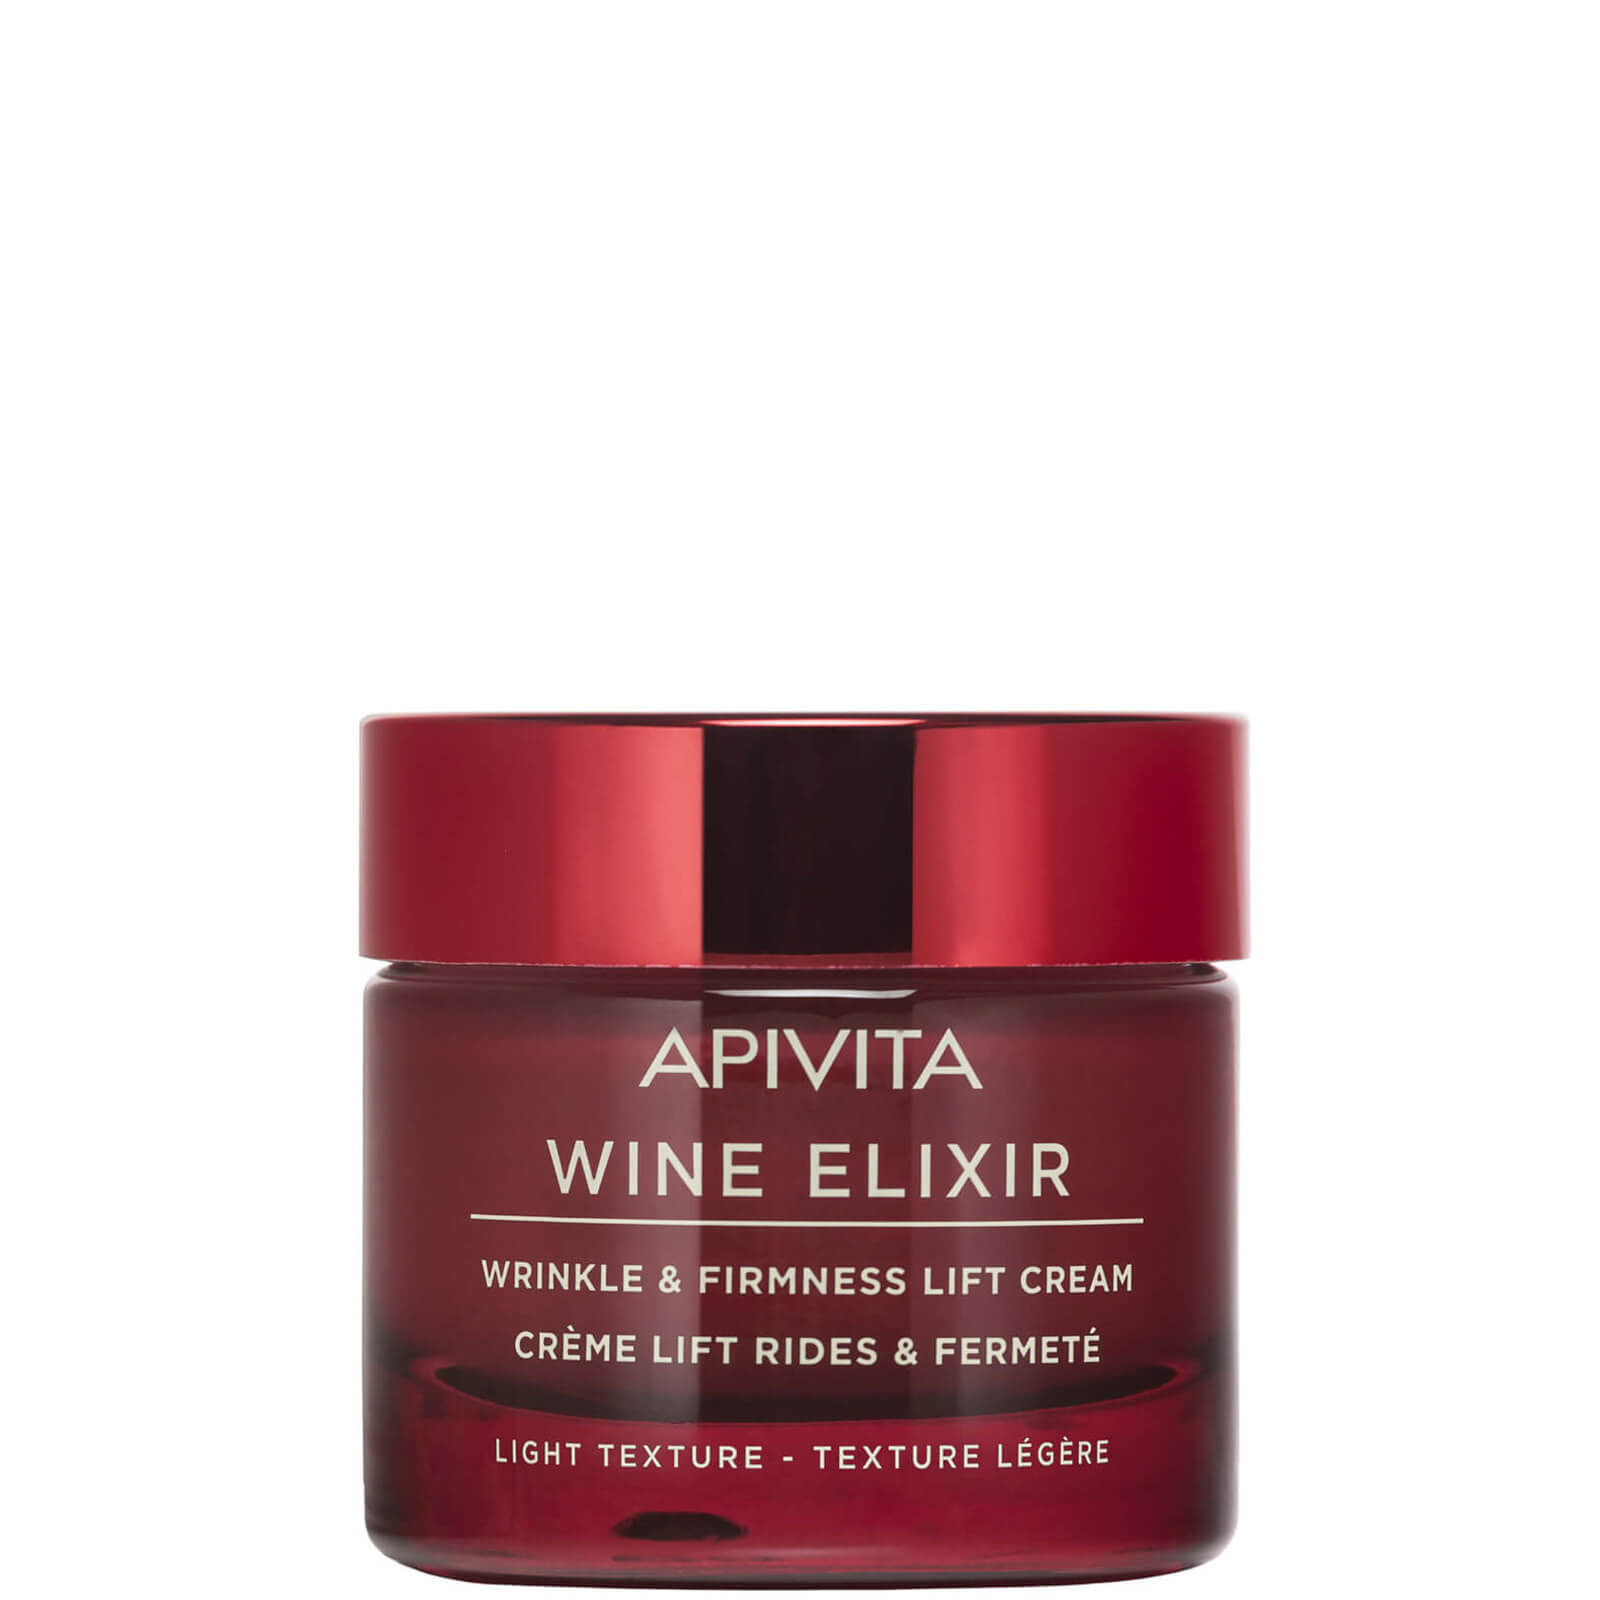 Crema reafirmante y antiarrugas Wine Elixir de APIVITA - Crema ligera 50 ml